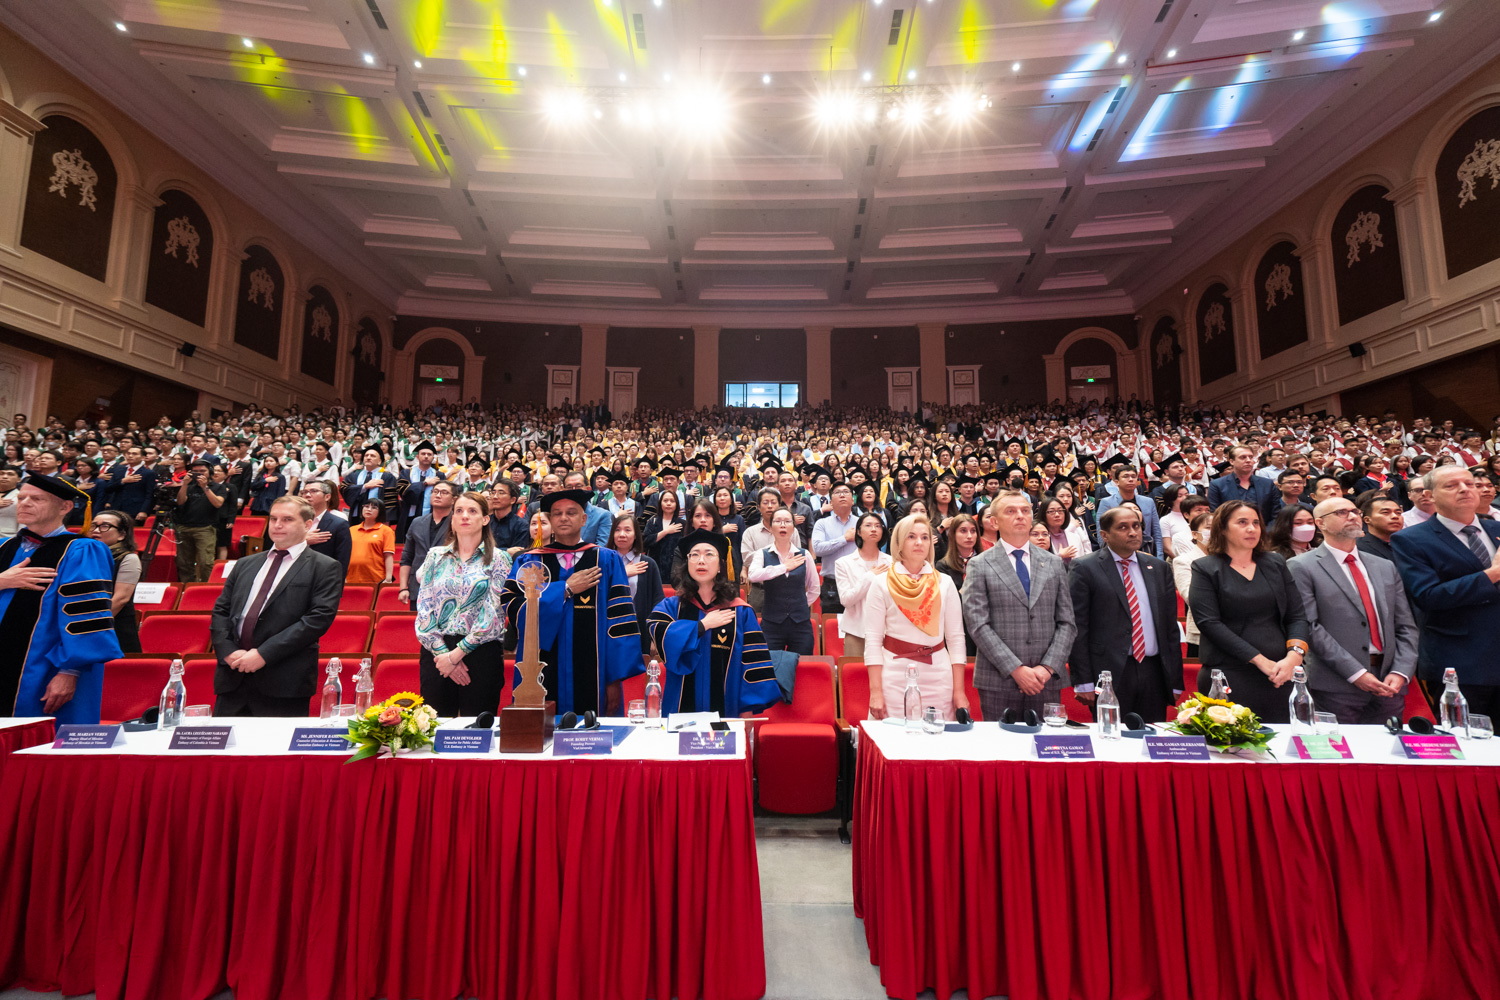 Lễ khai giảng của VinUni vinh dự được đón tiếp gần 1.500 người là các quan khách, lãnh đạo, giảng viên, phụ huynh và các thế hệ sinh viên của trường.